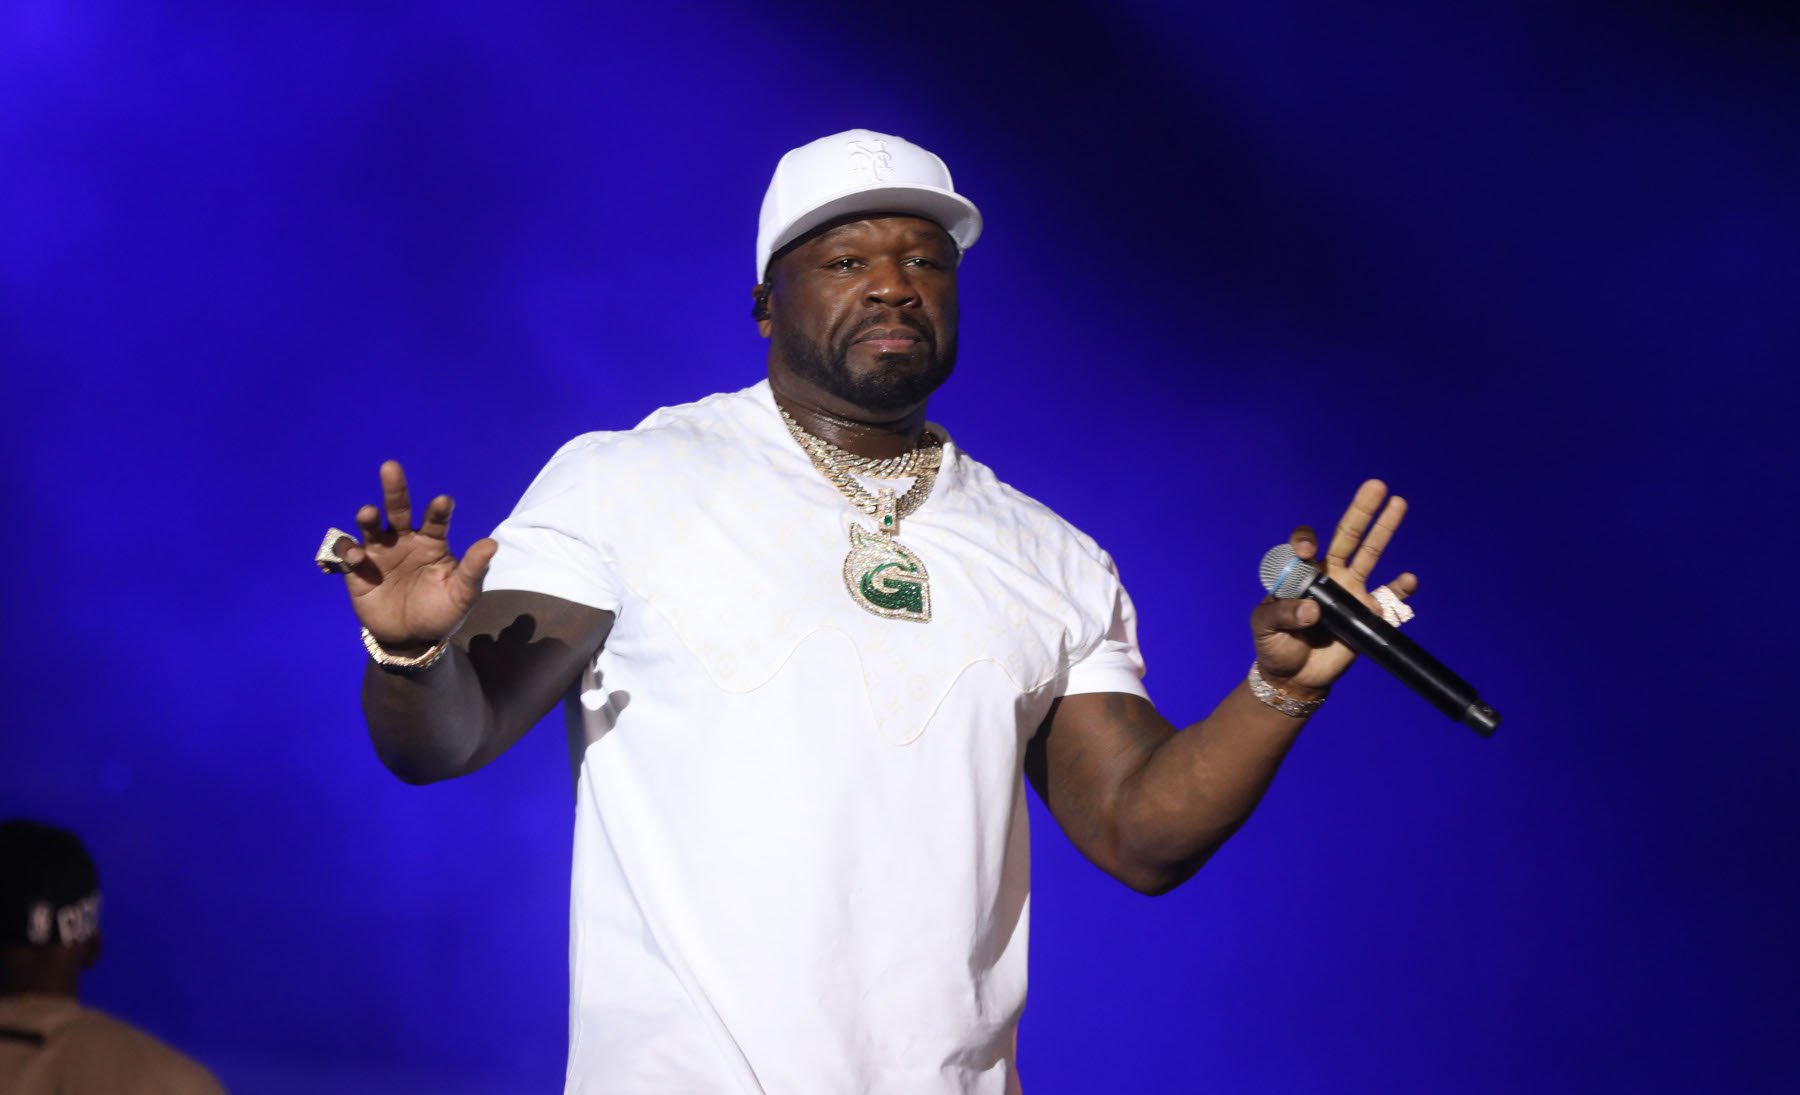 50 Cent: Πέταξε το μικρόφωνο στο κοινό και τραυμάτισε μία γυναίκα